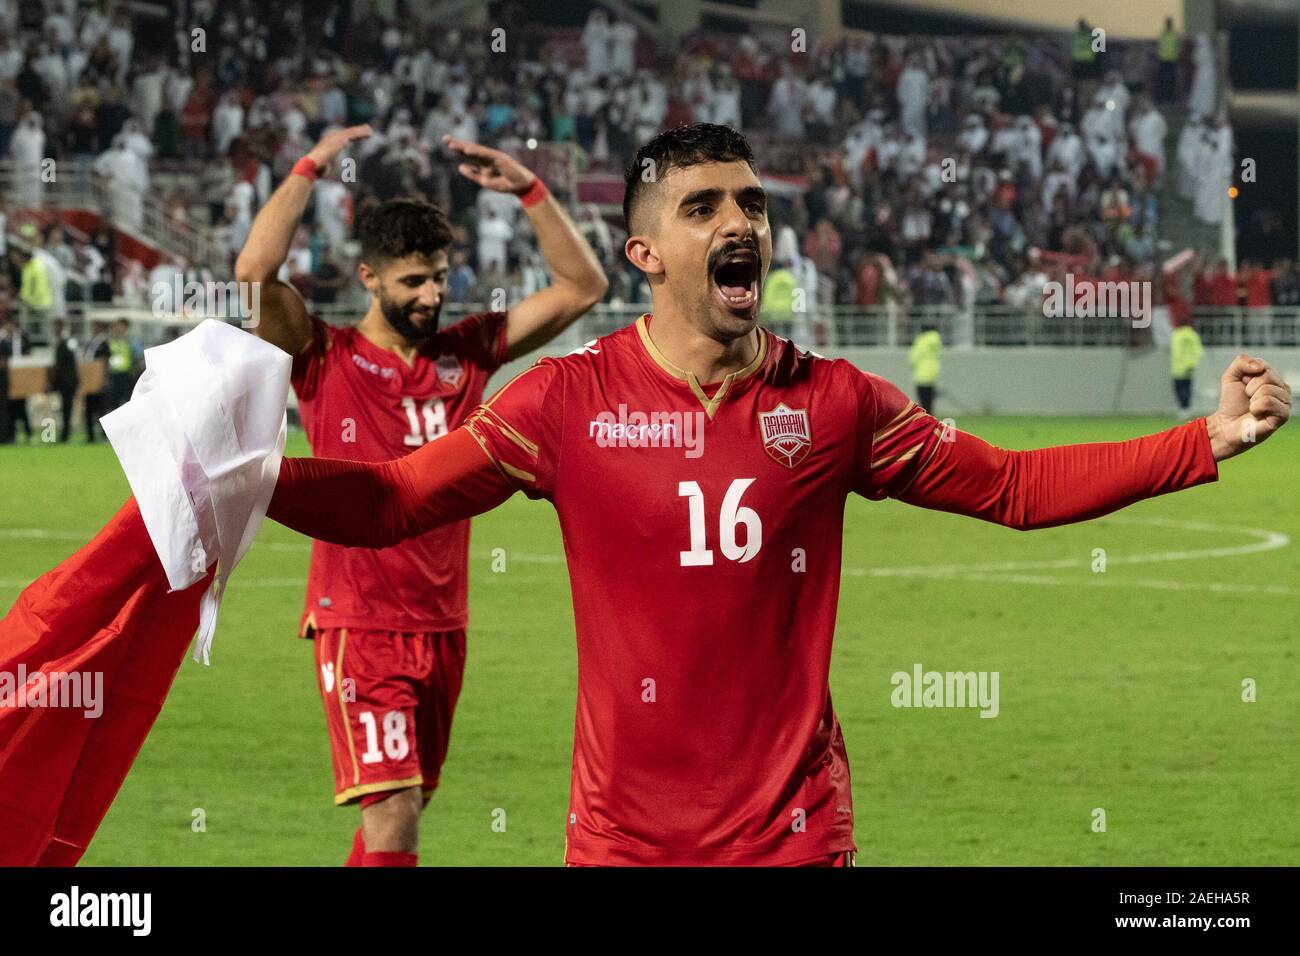 Bahrain National Football team di giocatori per celebrare la loro vittoria nel Golfo finale di coppa. Il Bahrein ha vinto il Golfo Arabico Cup titolo per la prima volta con una vittoria 1-0 sopra l'Arabia Saudita nella finale di domenica. Bahrain lo scorso ha raggiunto la finale nel 2004. I sauditi stavano cercando di sollevare il titolo per la quarta volta. Durante la competizione la fase di gruppo, Bahrain aveva perso 0-2 in Arabia Saudita. Foto Stock